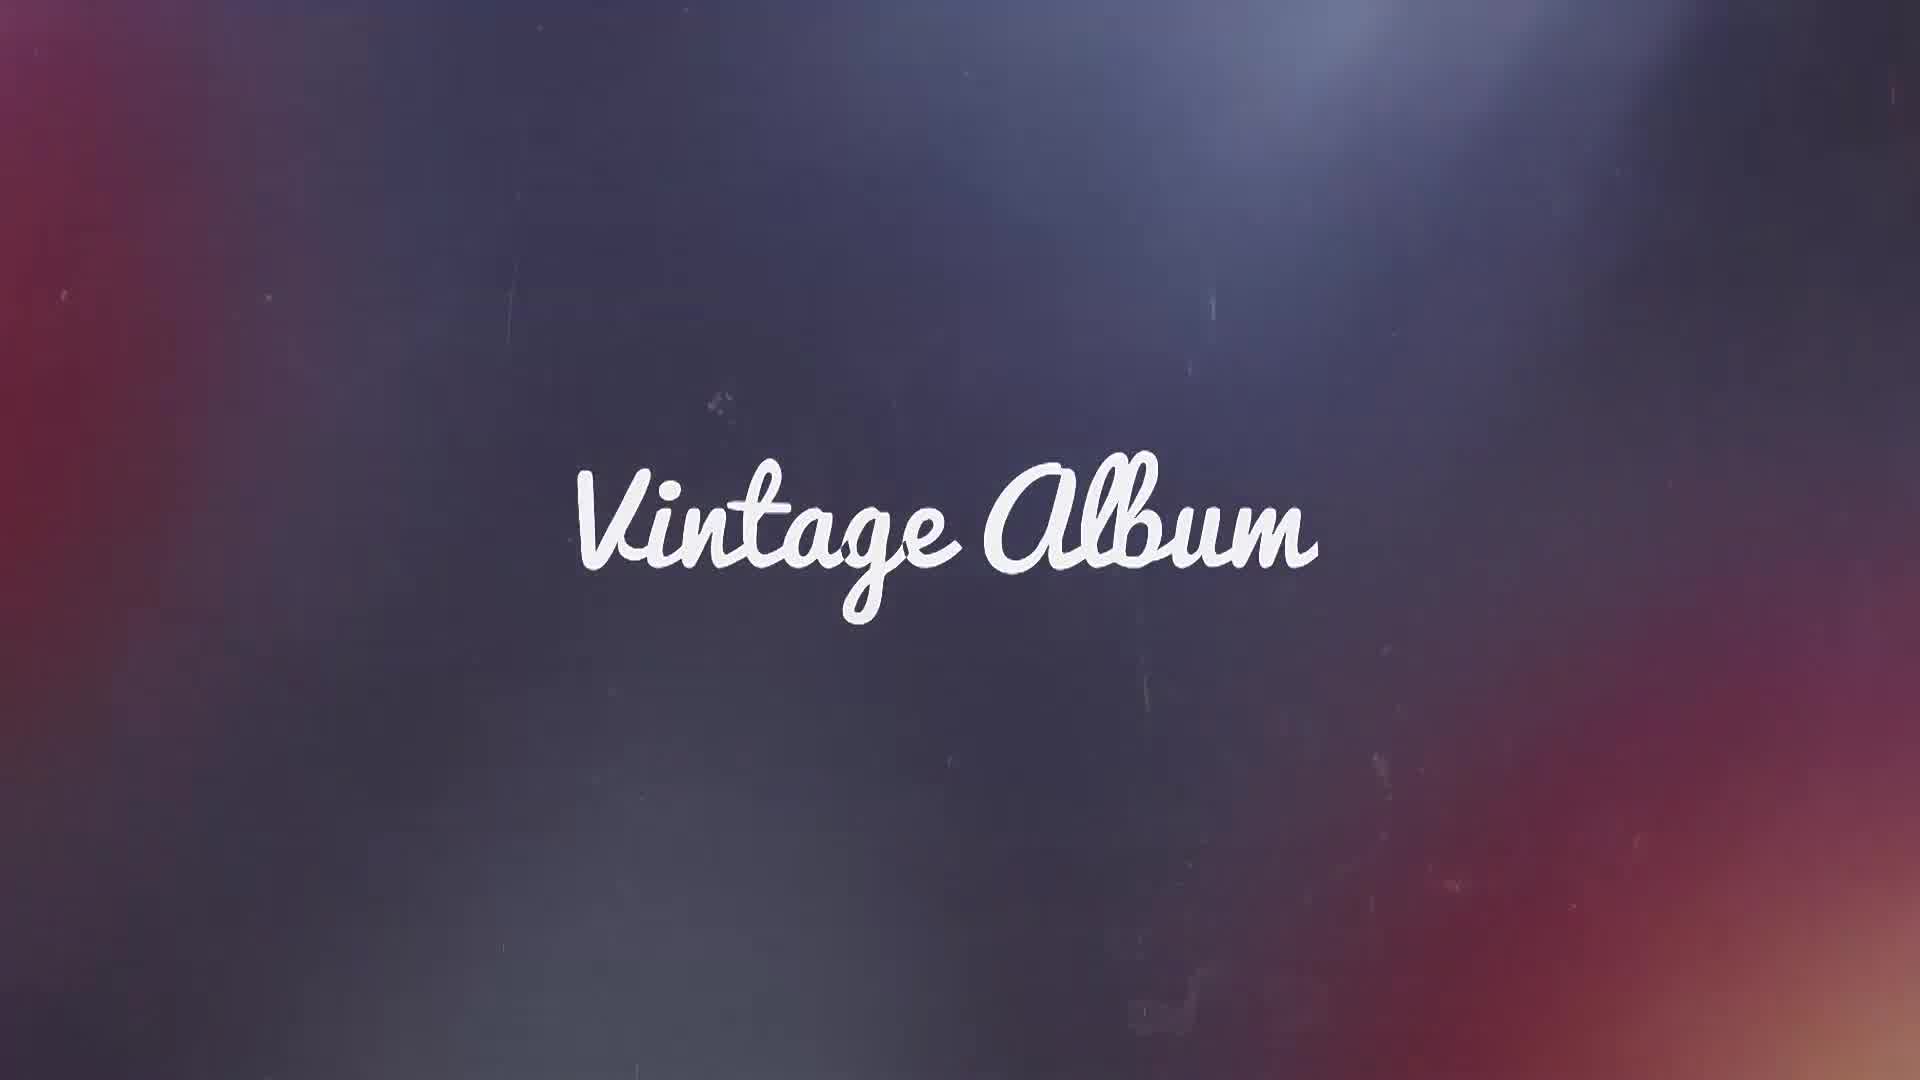 Vintage Album Videohive 22826685 Premiere Pro Image 13